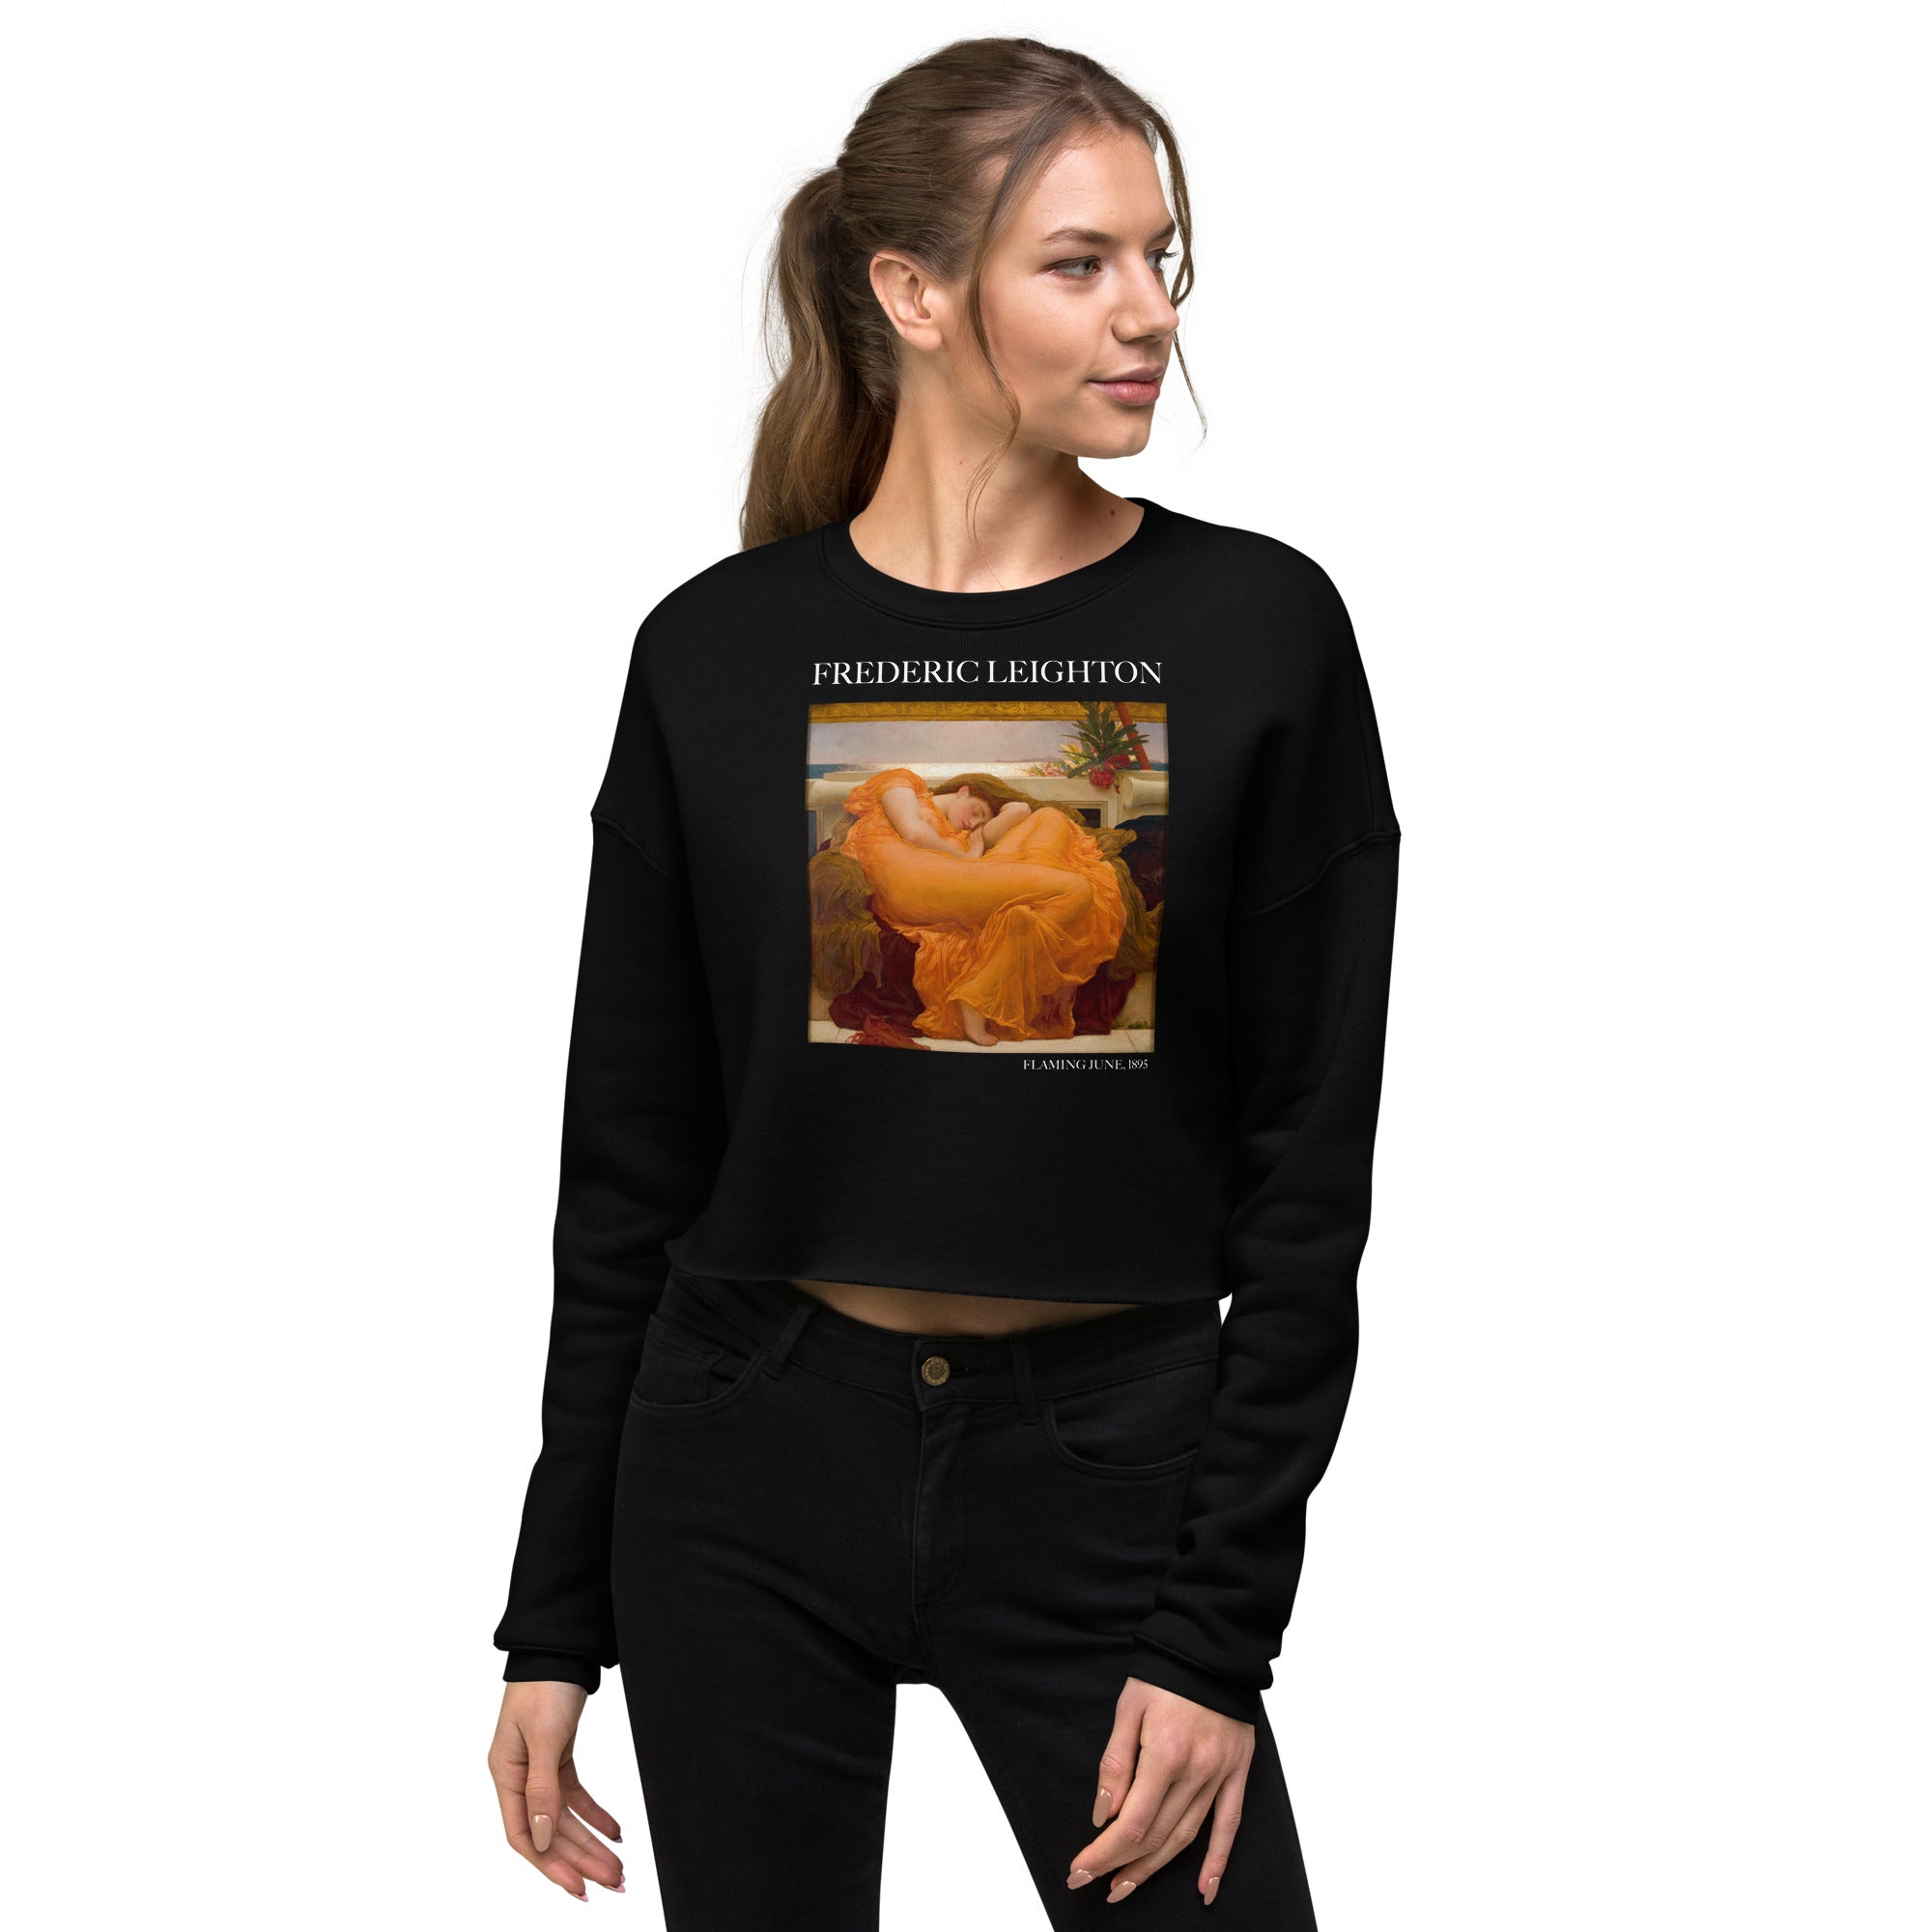 Kurzes Sweatshirt mit berühmtem Gemälde „Flaming June“ von Frederic Leighton | Kurzes Sweatshirt mit Premium-Kunstmotiv